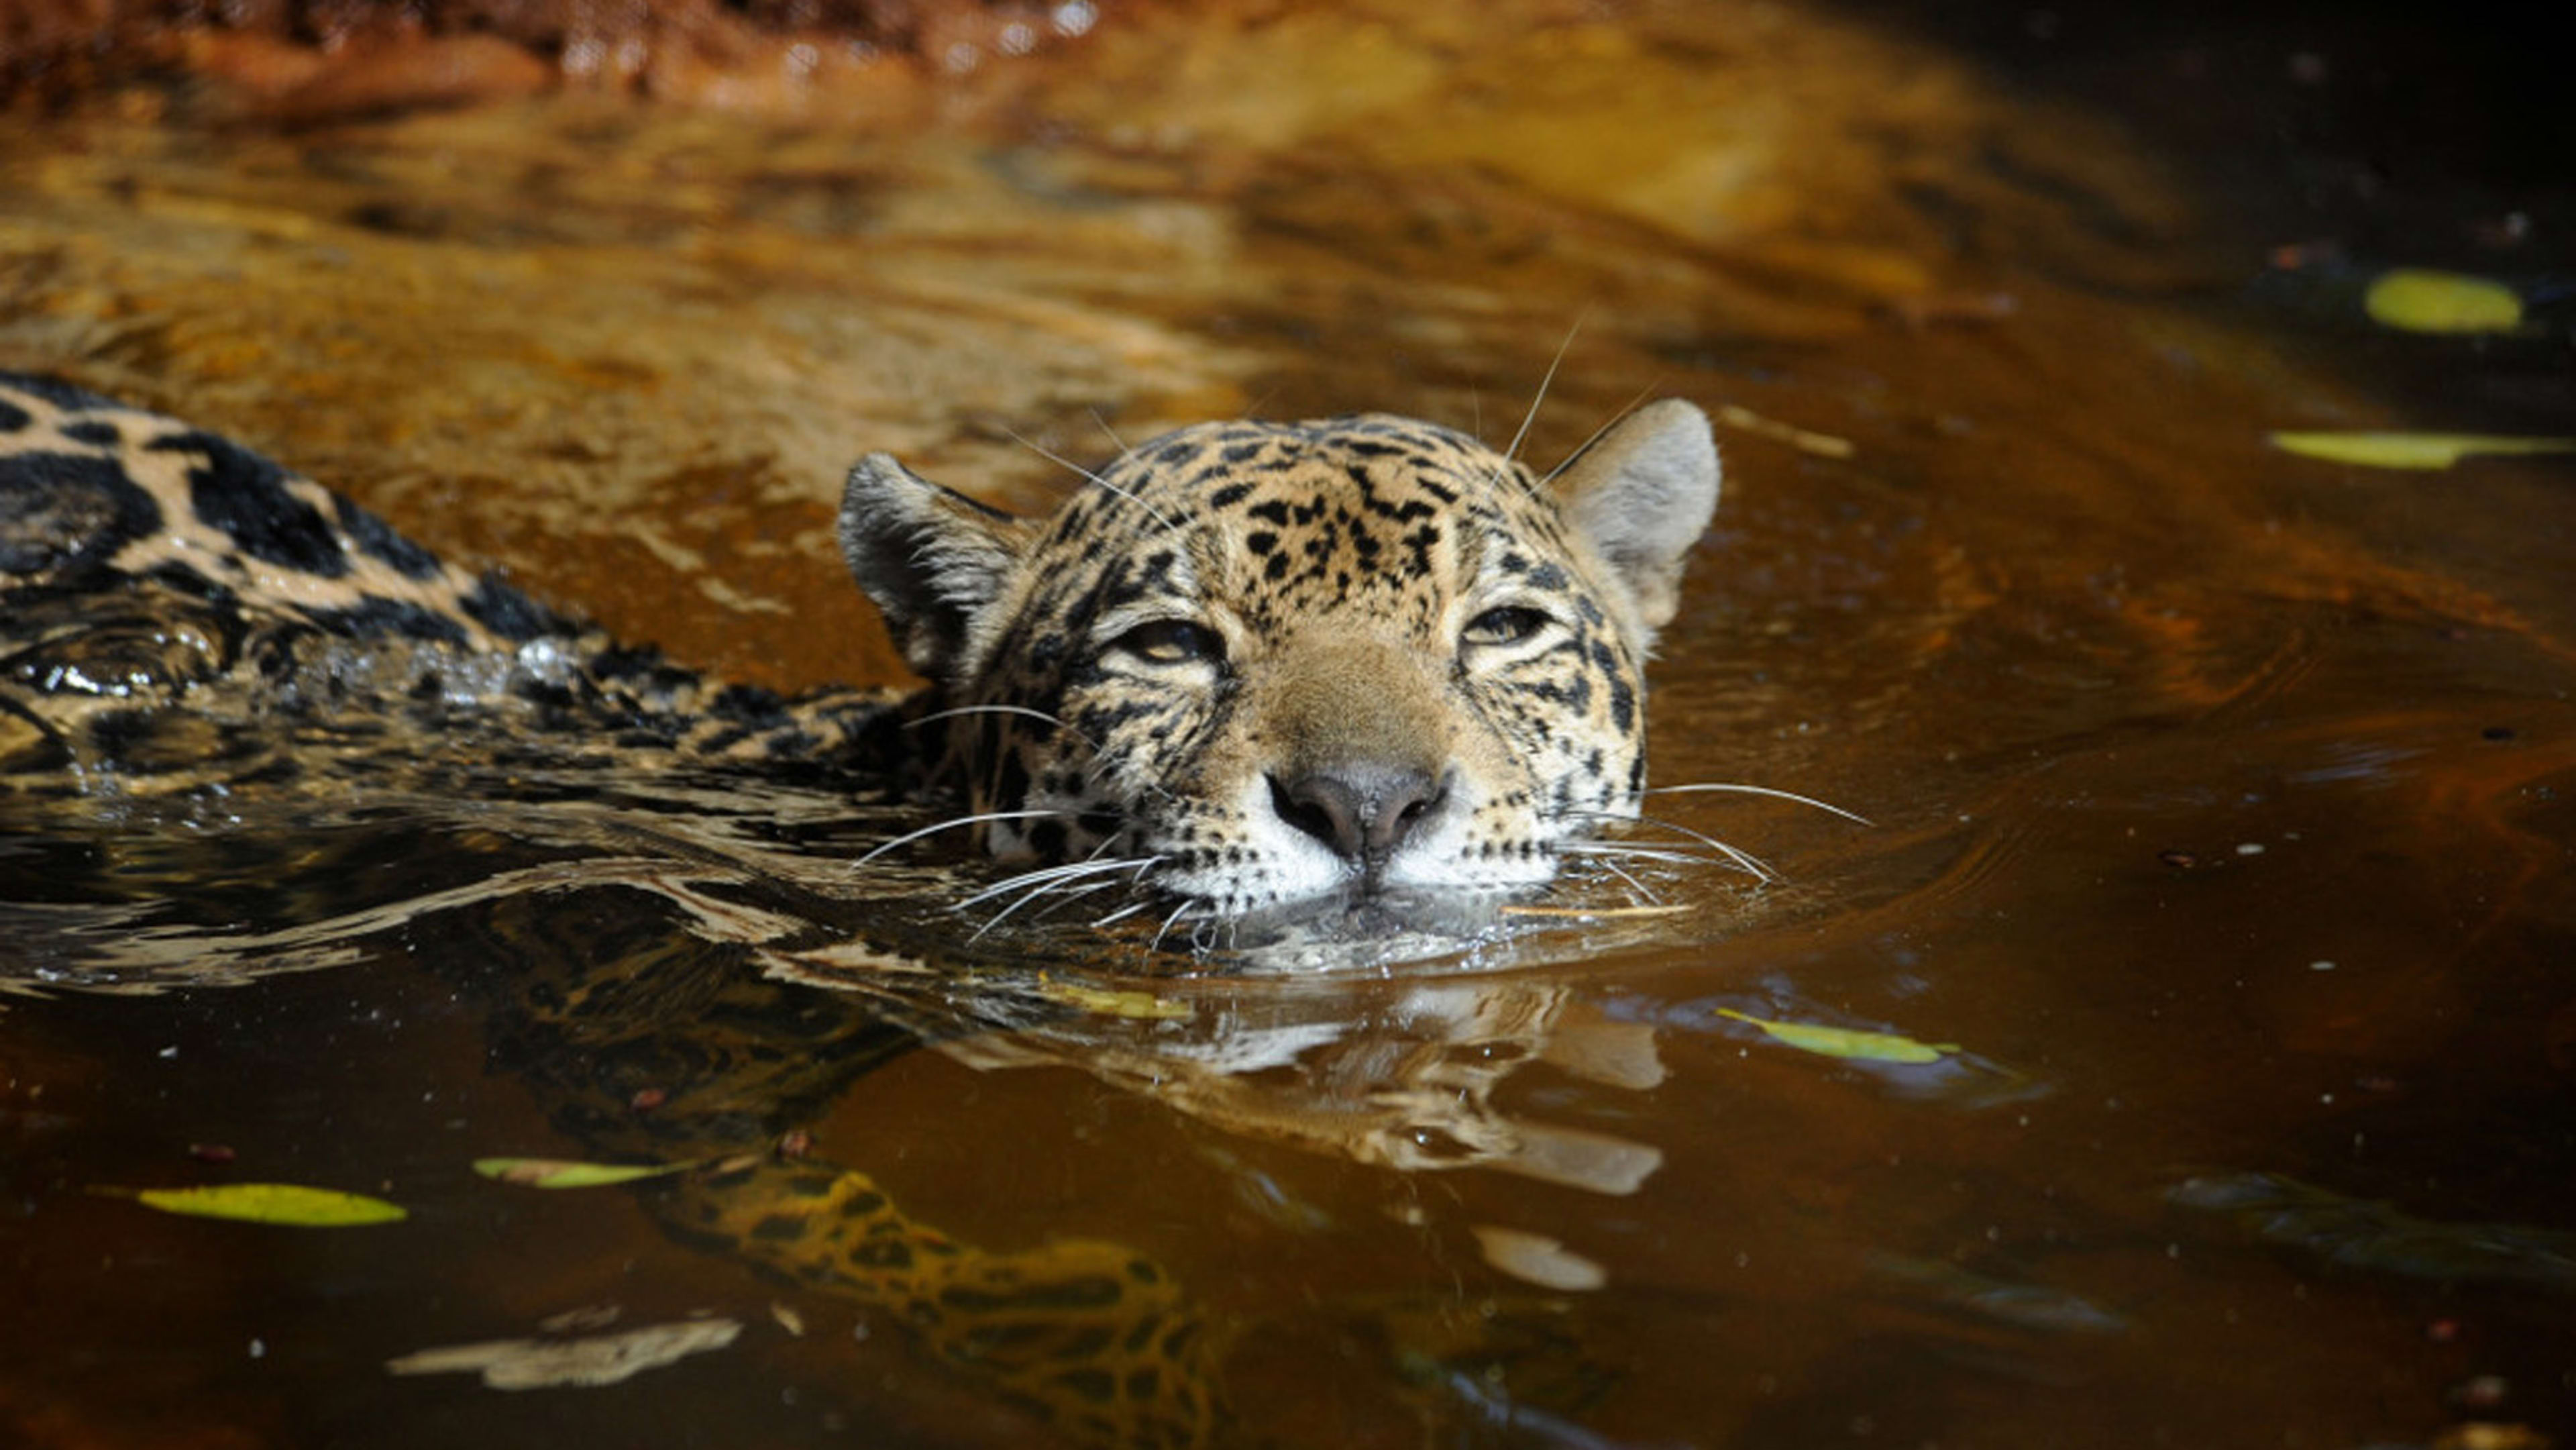 Should we bring jaguars back to the U.S.?